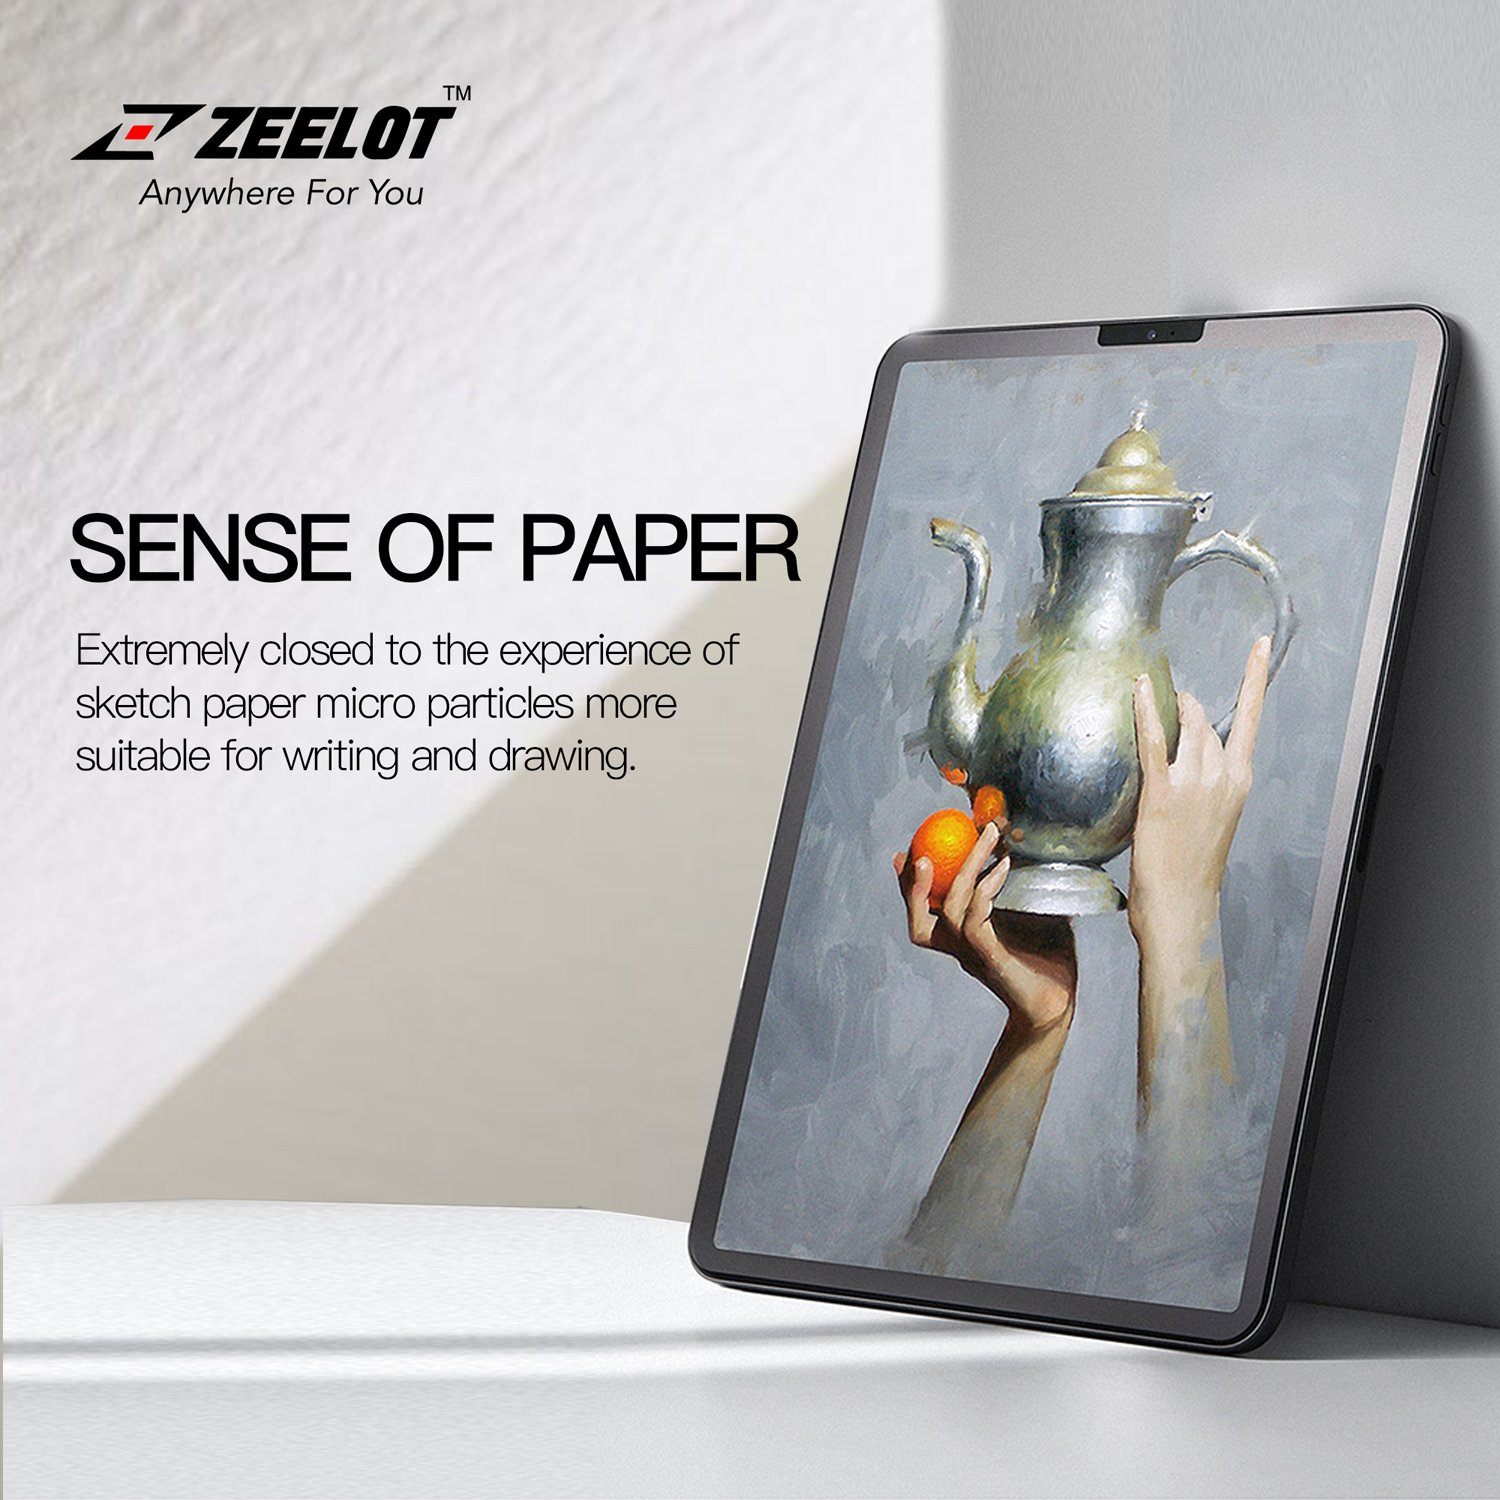 ZEELOT PureGlass 2.5D Clear Tempered Glass Screen Protector for iPad Pro 12.9" (2017/2015) Tempered Glass Zeelot 